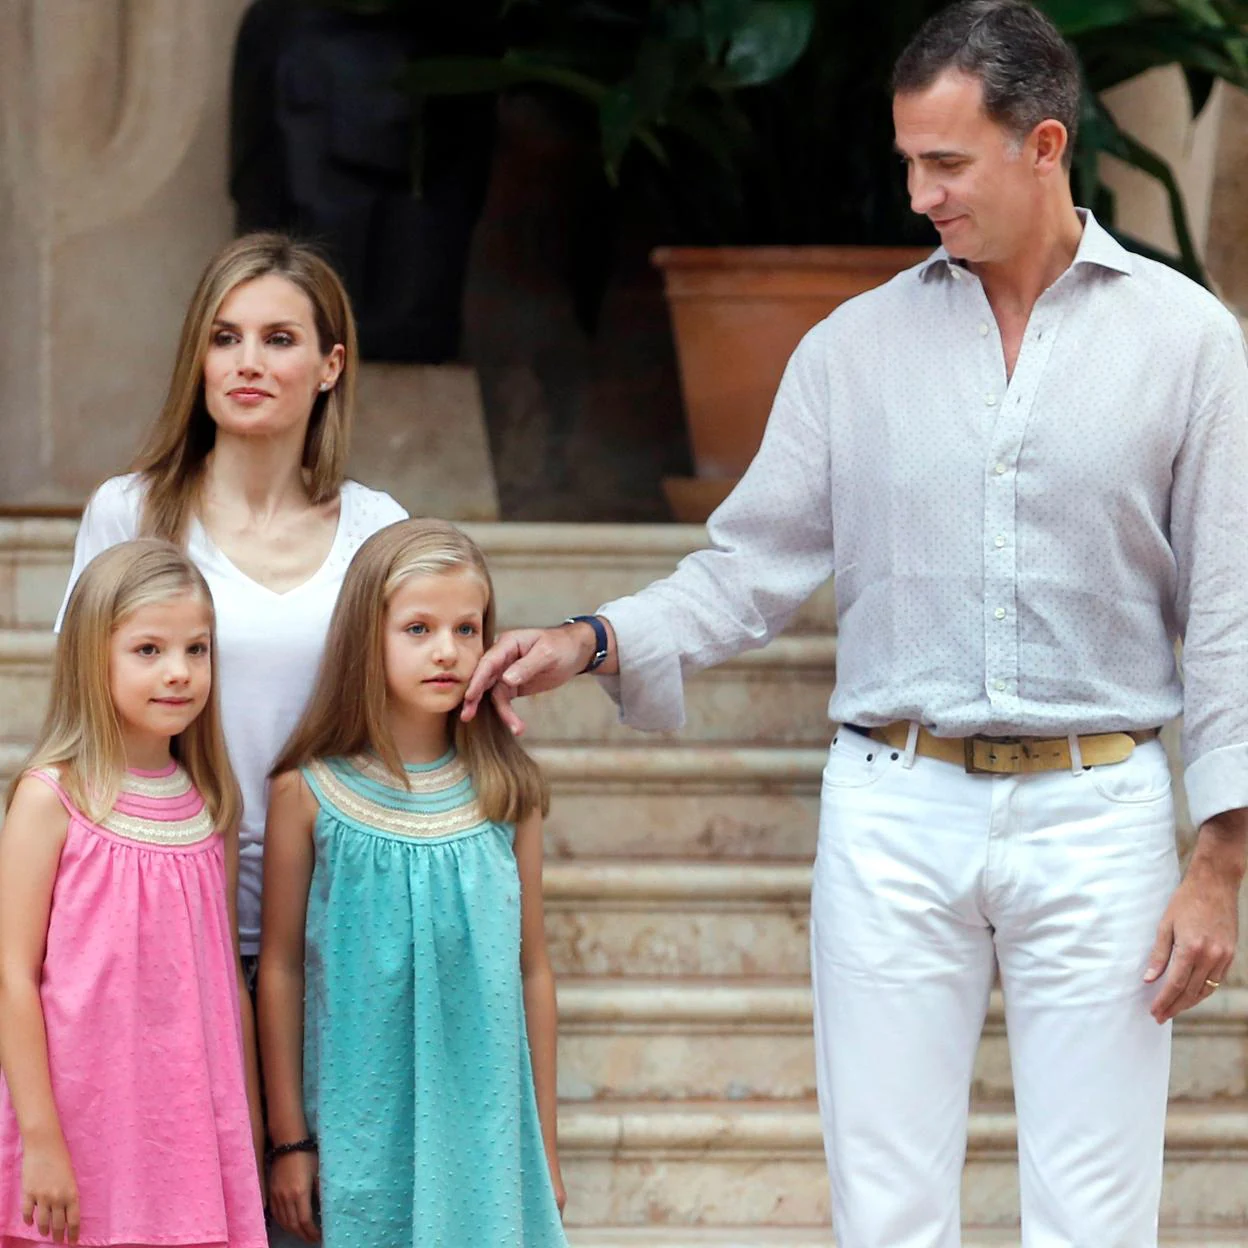 El rey Felipe VI es un padre cariñoso que no se reprime gestos tiernos con sus hijas. /getty images